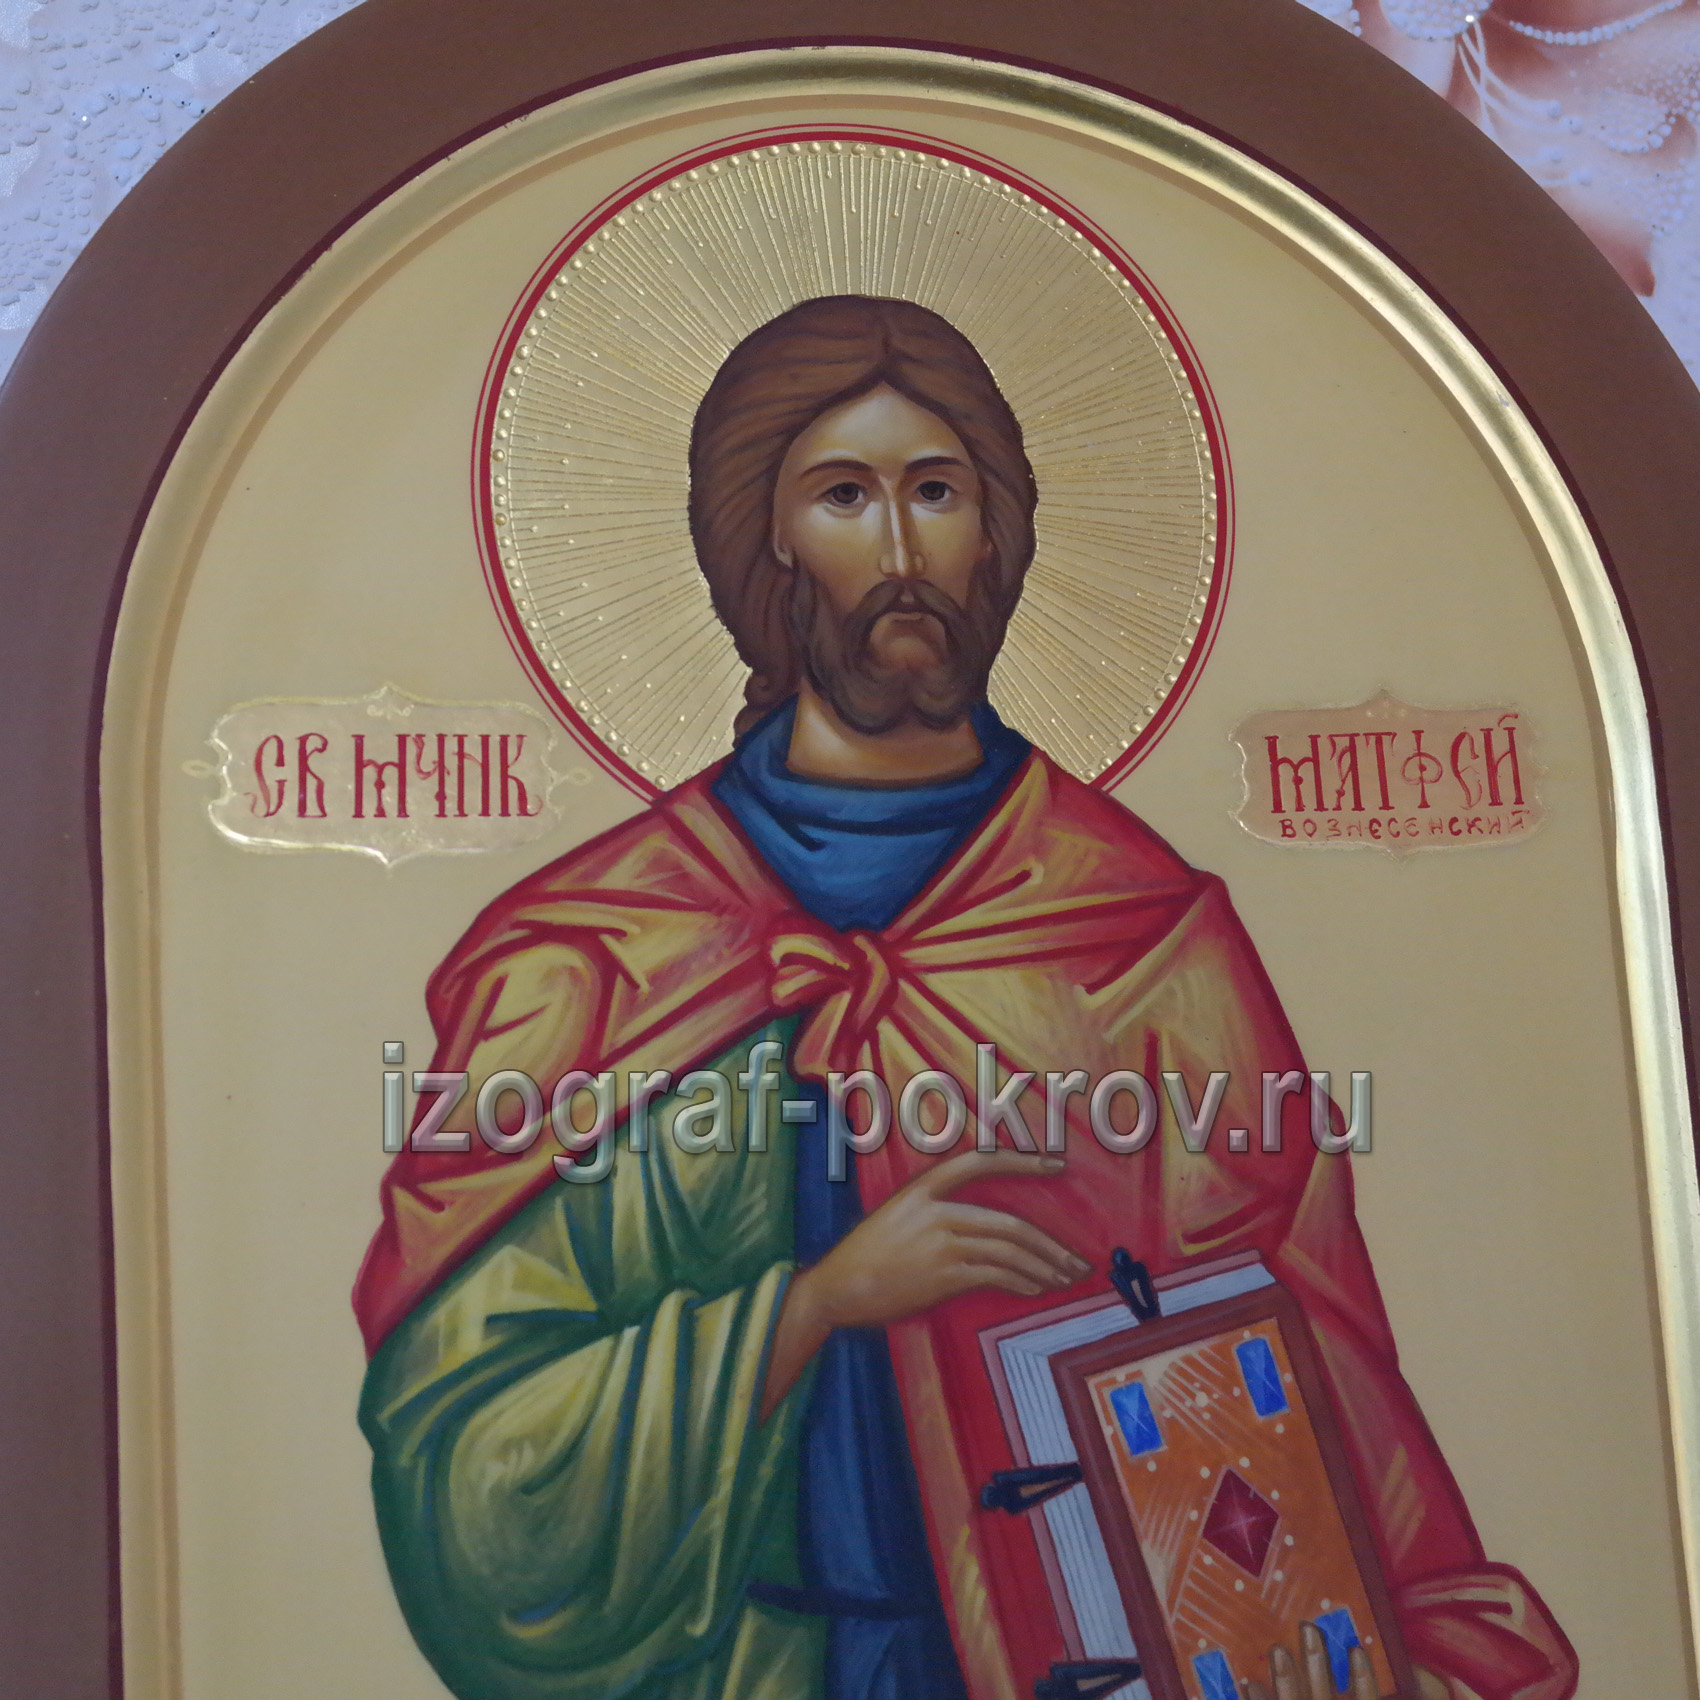 Икона Матфей Вознесенский фрагмент оформления